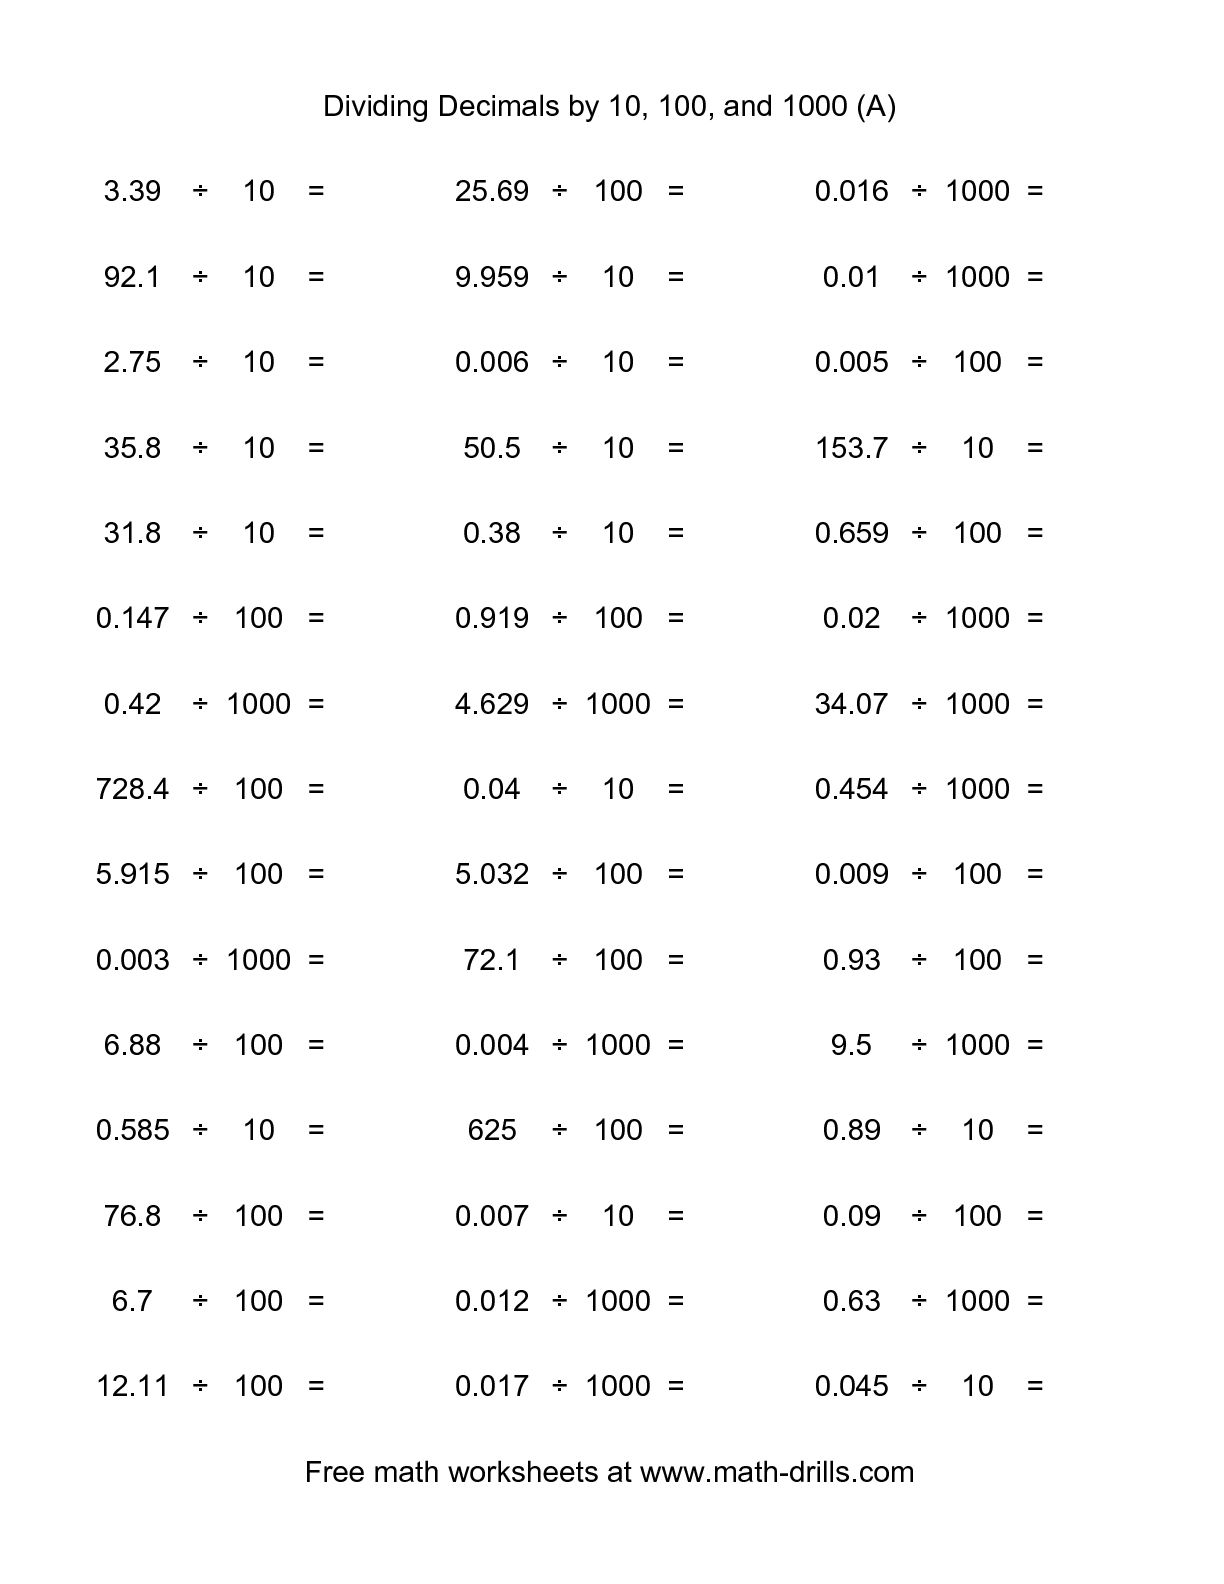 8-best-images-of-dividing-decimals-worksheet-free-printable-decimal-division-worksheets